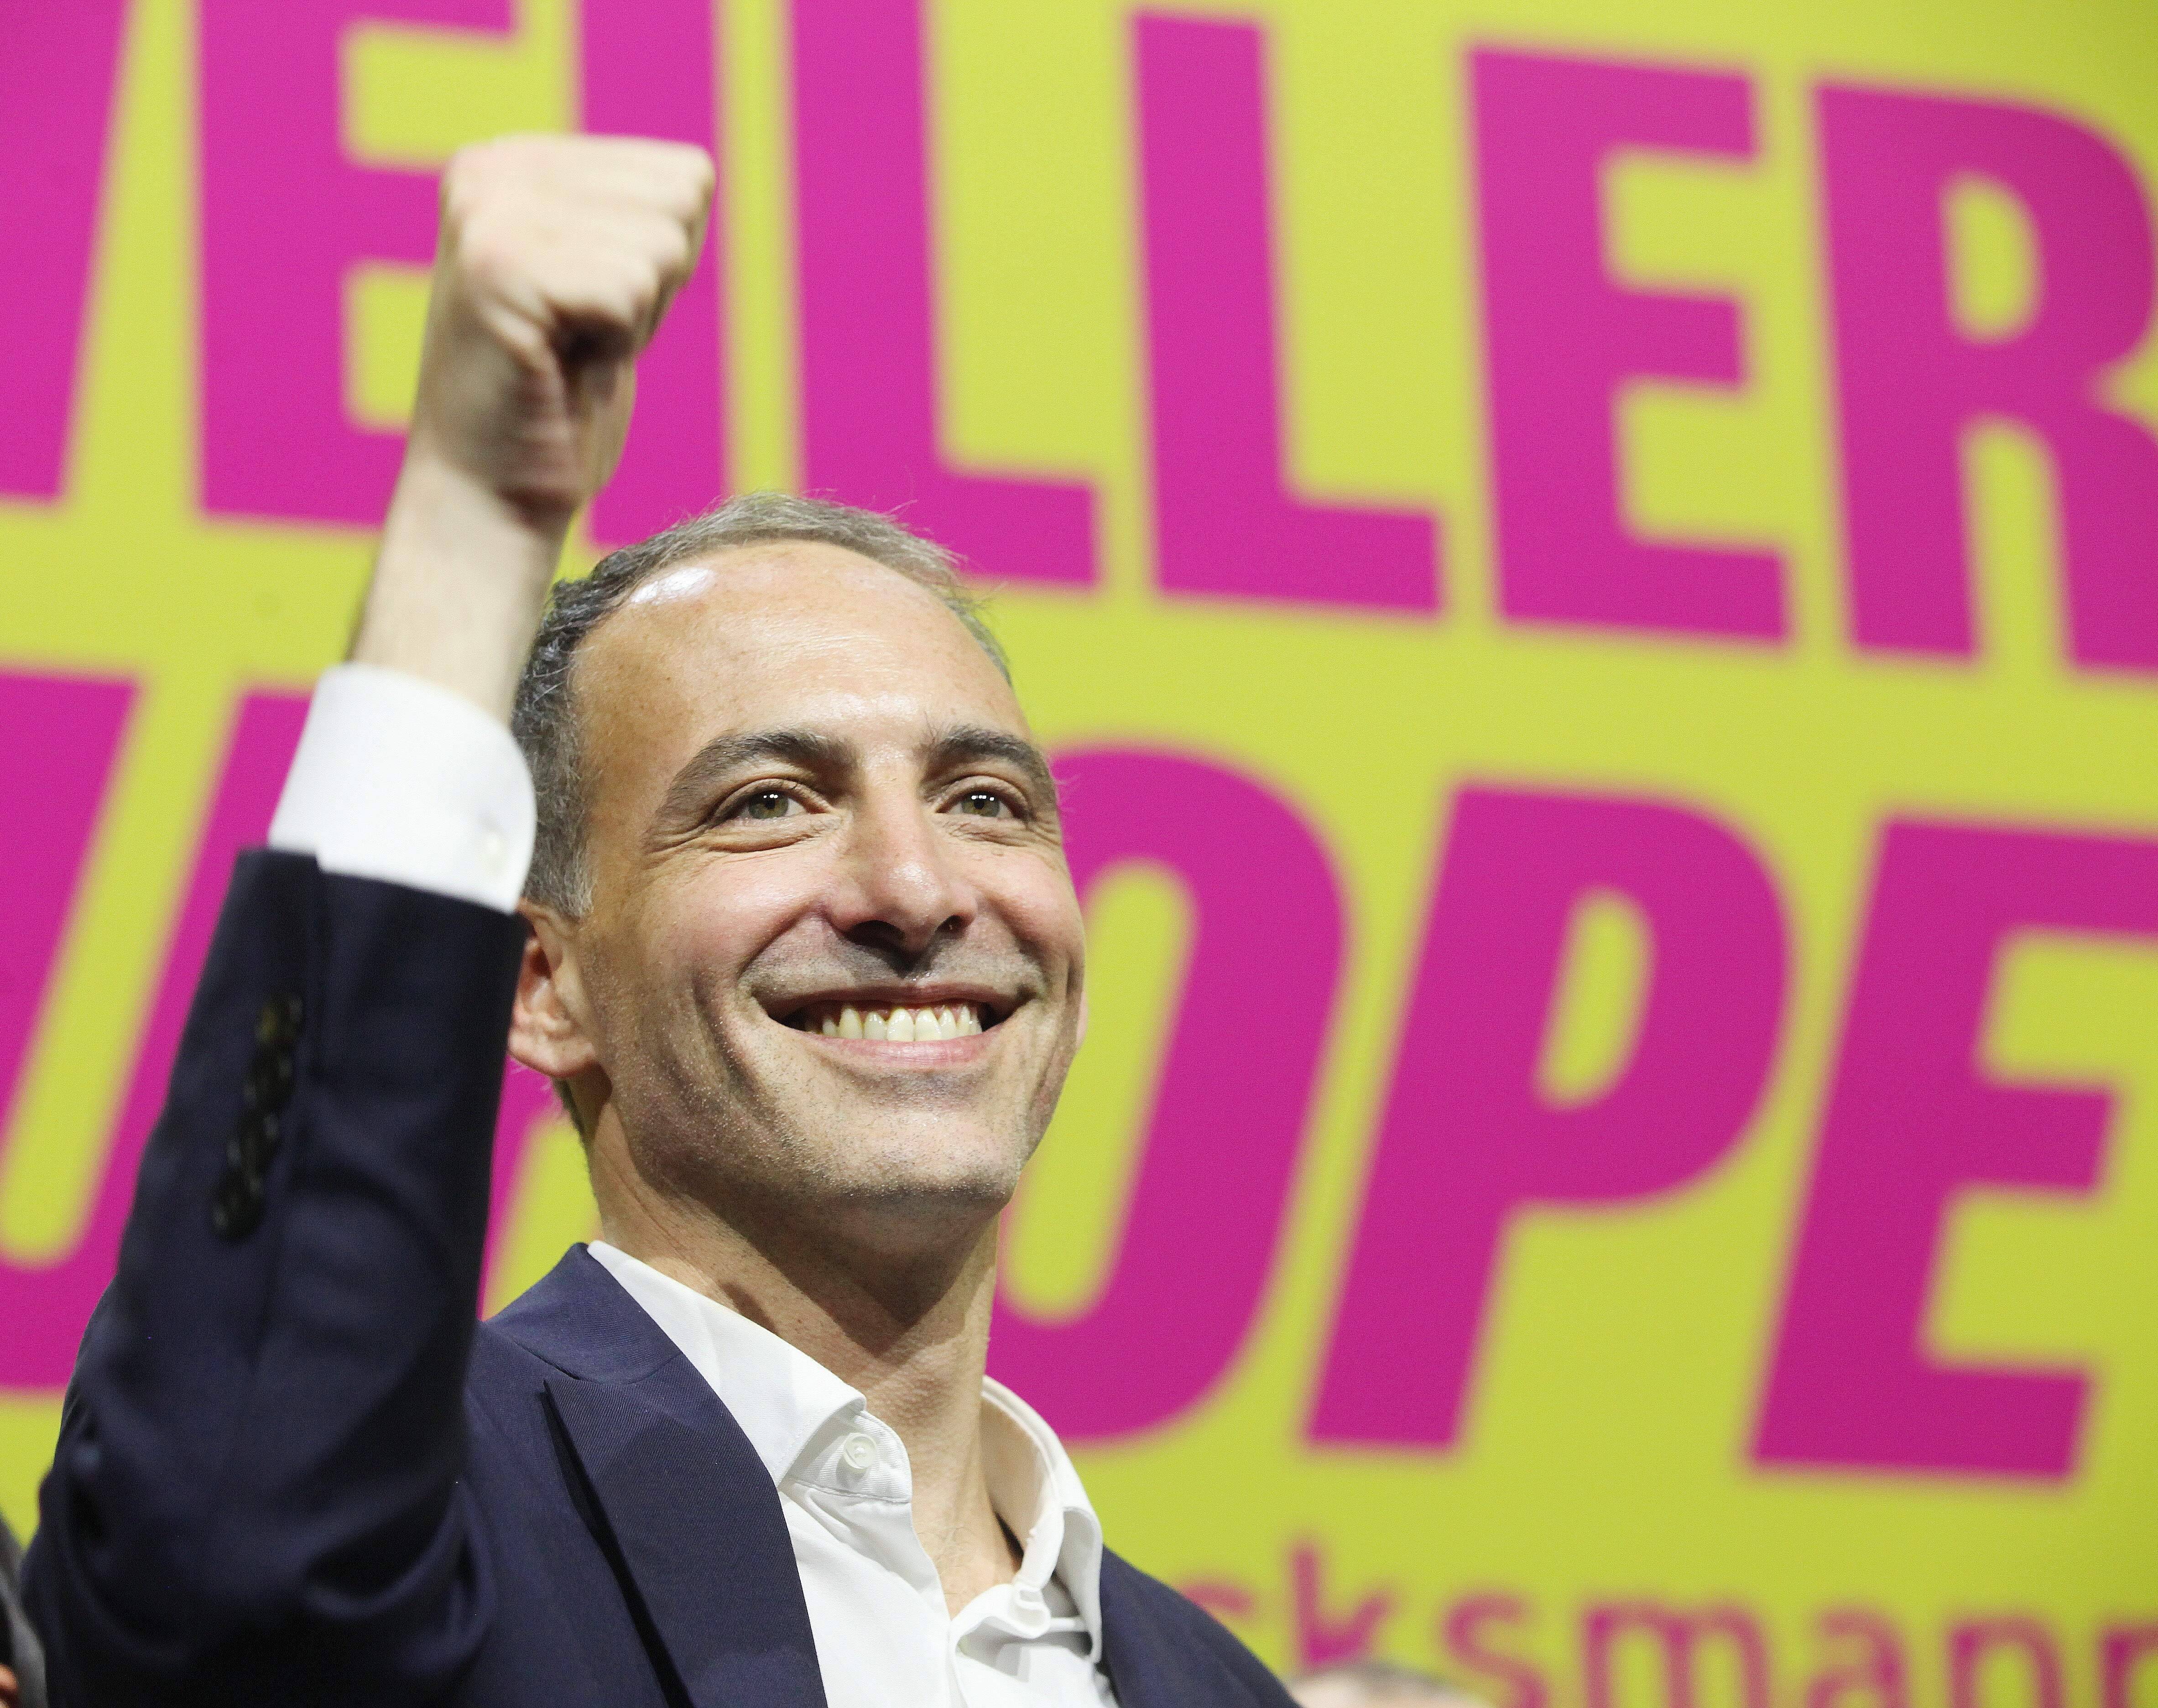 Will Europa aufwecken: PS-Spitzenkandidat Raphaël Glucksmann beim Wahlkampfabschuss am 30. Mai in Paris